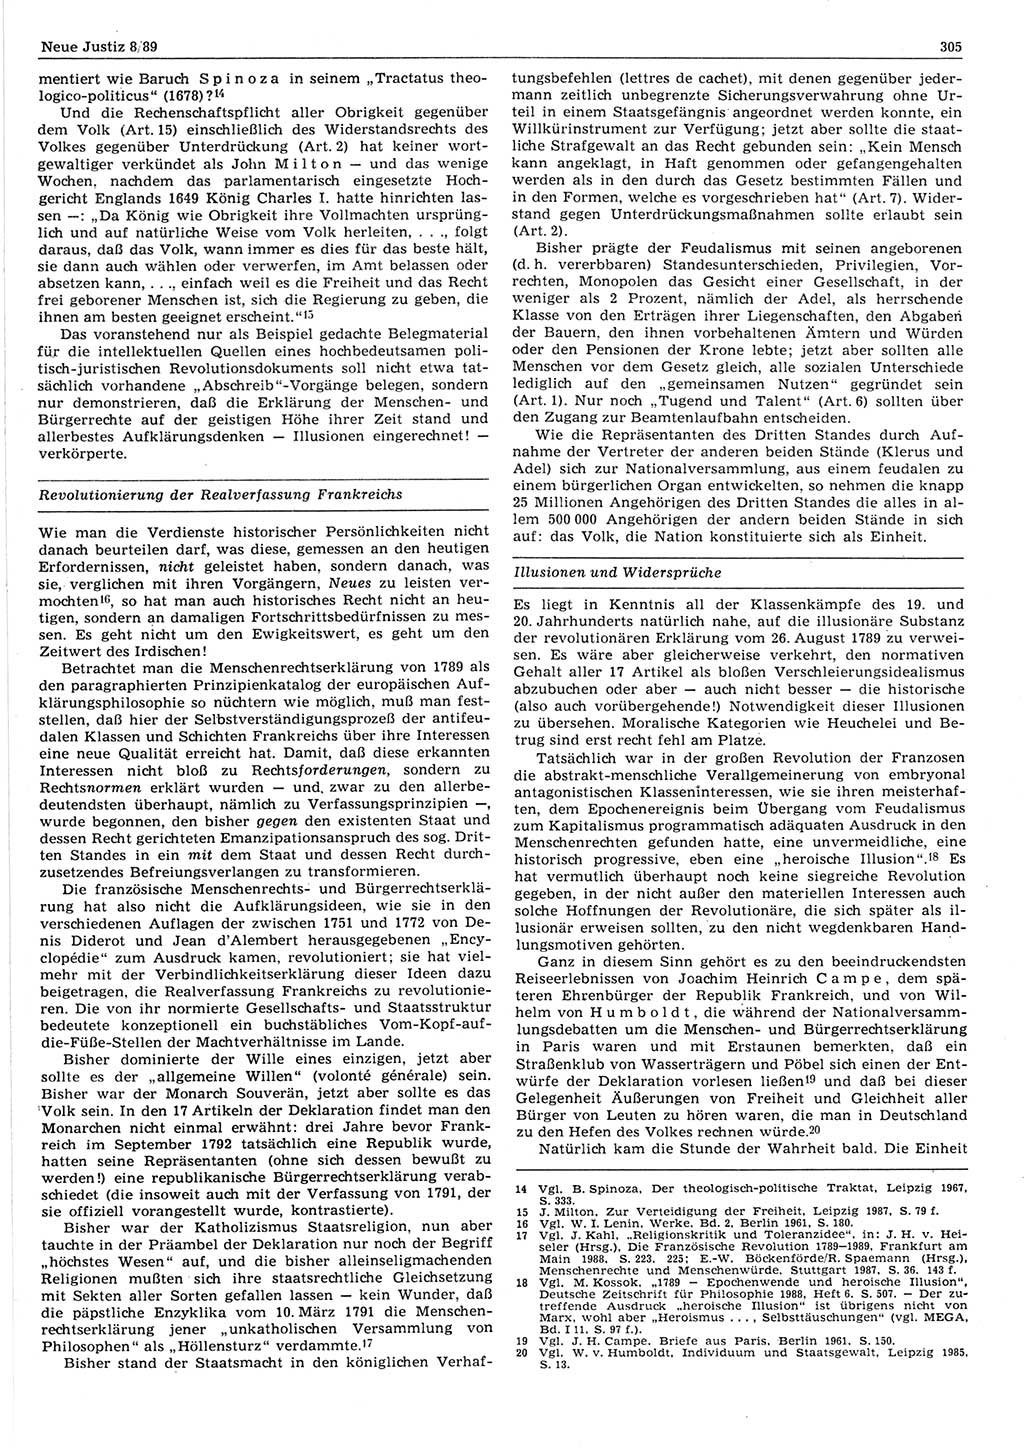 Neue Justiz (NJ), Zeitschrift für sozialistisches Recht und Gesetzlichkeit [Deutsche Demokratische Republik (DDR)], 43. Jahrgang 1989, Seite 305 (NJ DDR 1989, S. 305)